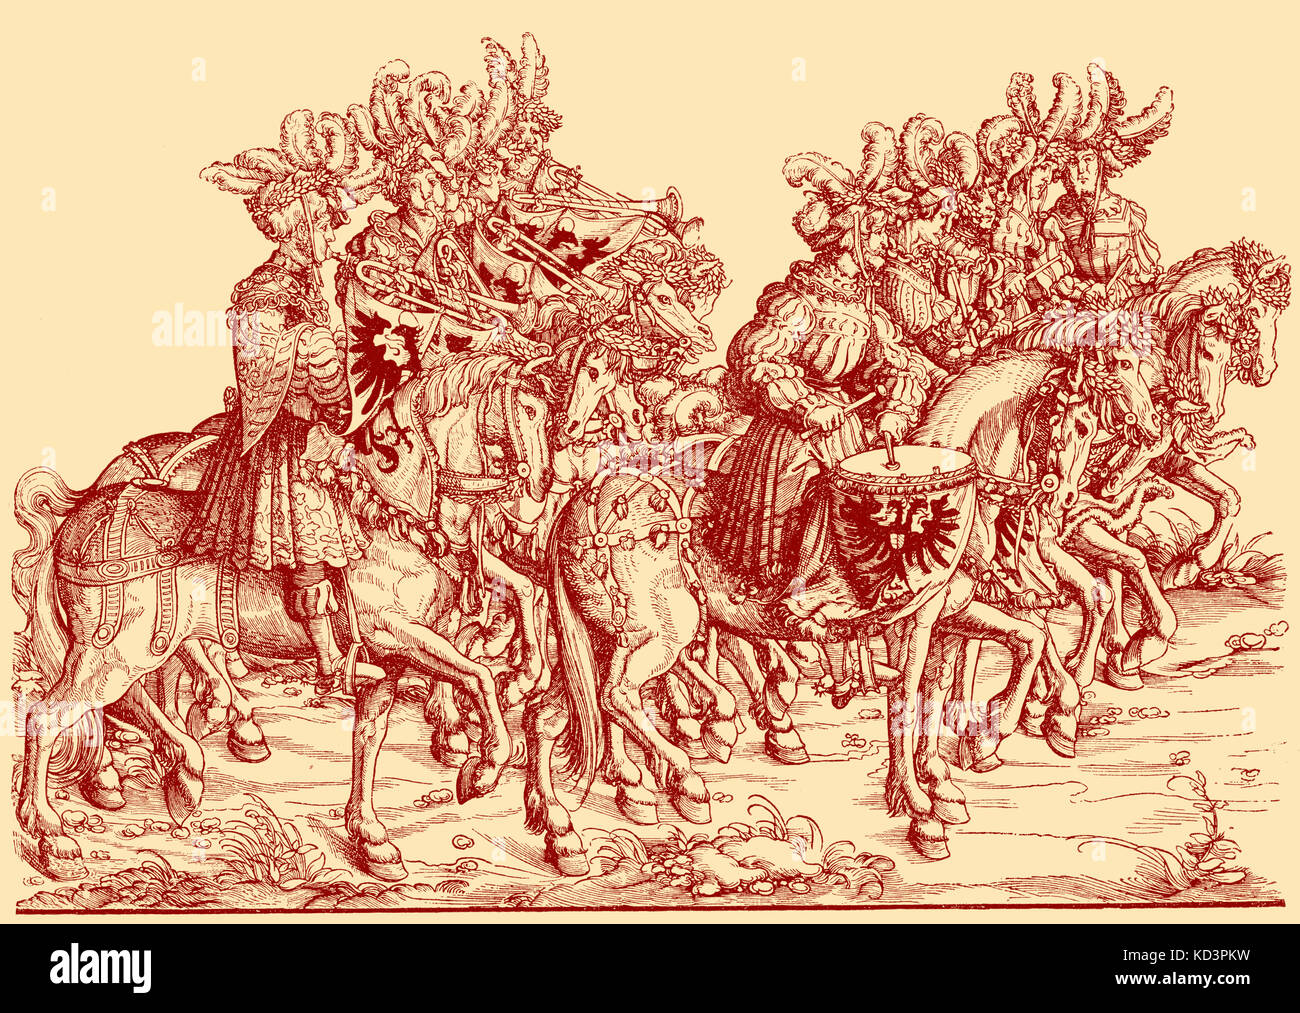 Trombettieri e batteristi a cavallo, processione trionfale di Massimiliano i, imperatore del Sacro Romano Impero (22 marzo 1459 – 12 gennaio 1519). Illustrazione del taglio di legno di Hans Burgkmair (1472 - 1531) Foto Stock